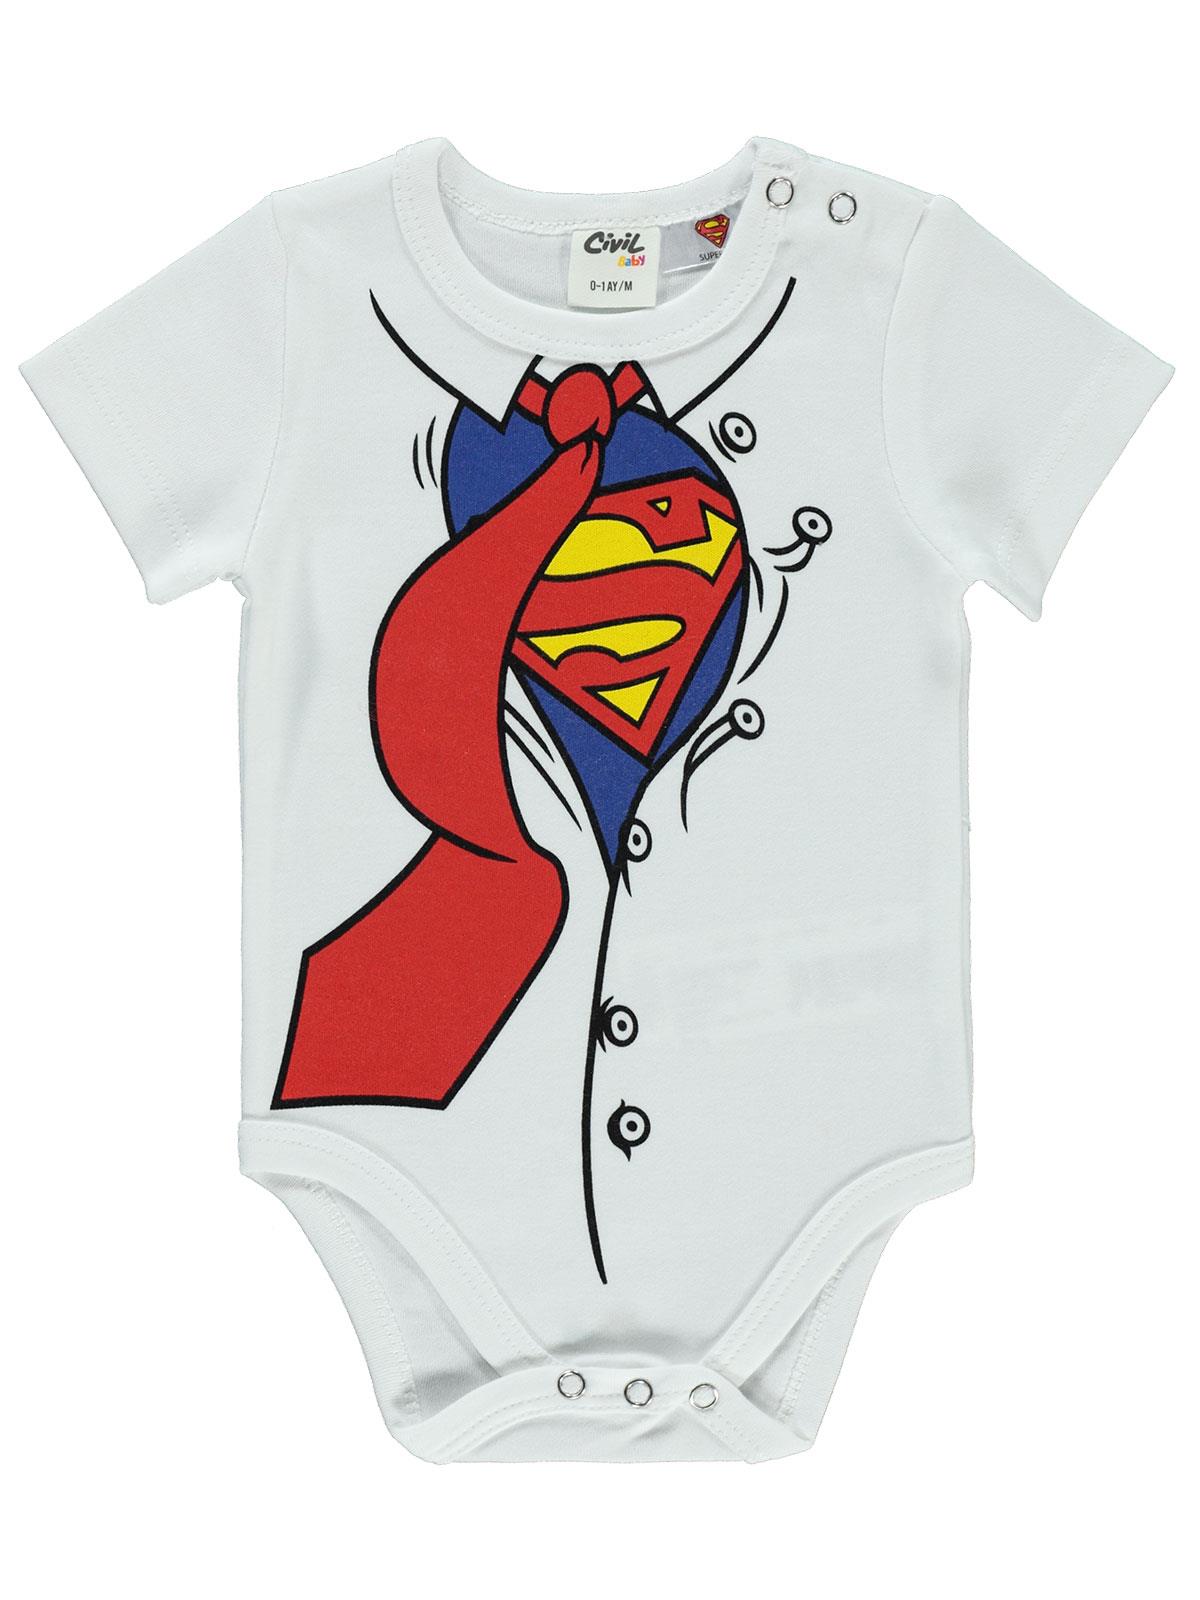 Süperman Erkek Bebek Çıtçıtlı Badi 0-18 Ay Beyaz